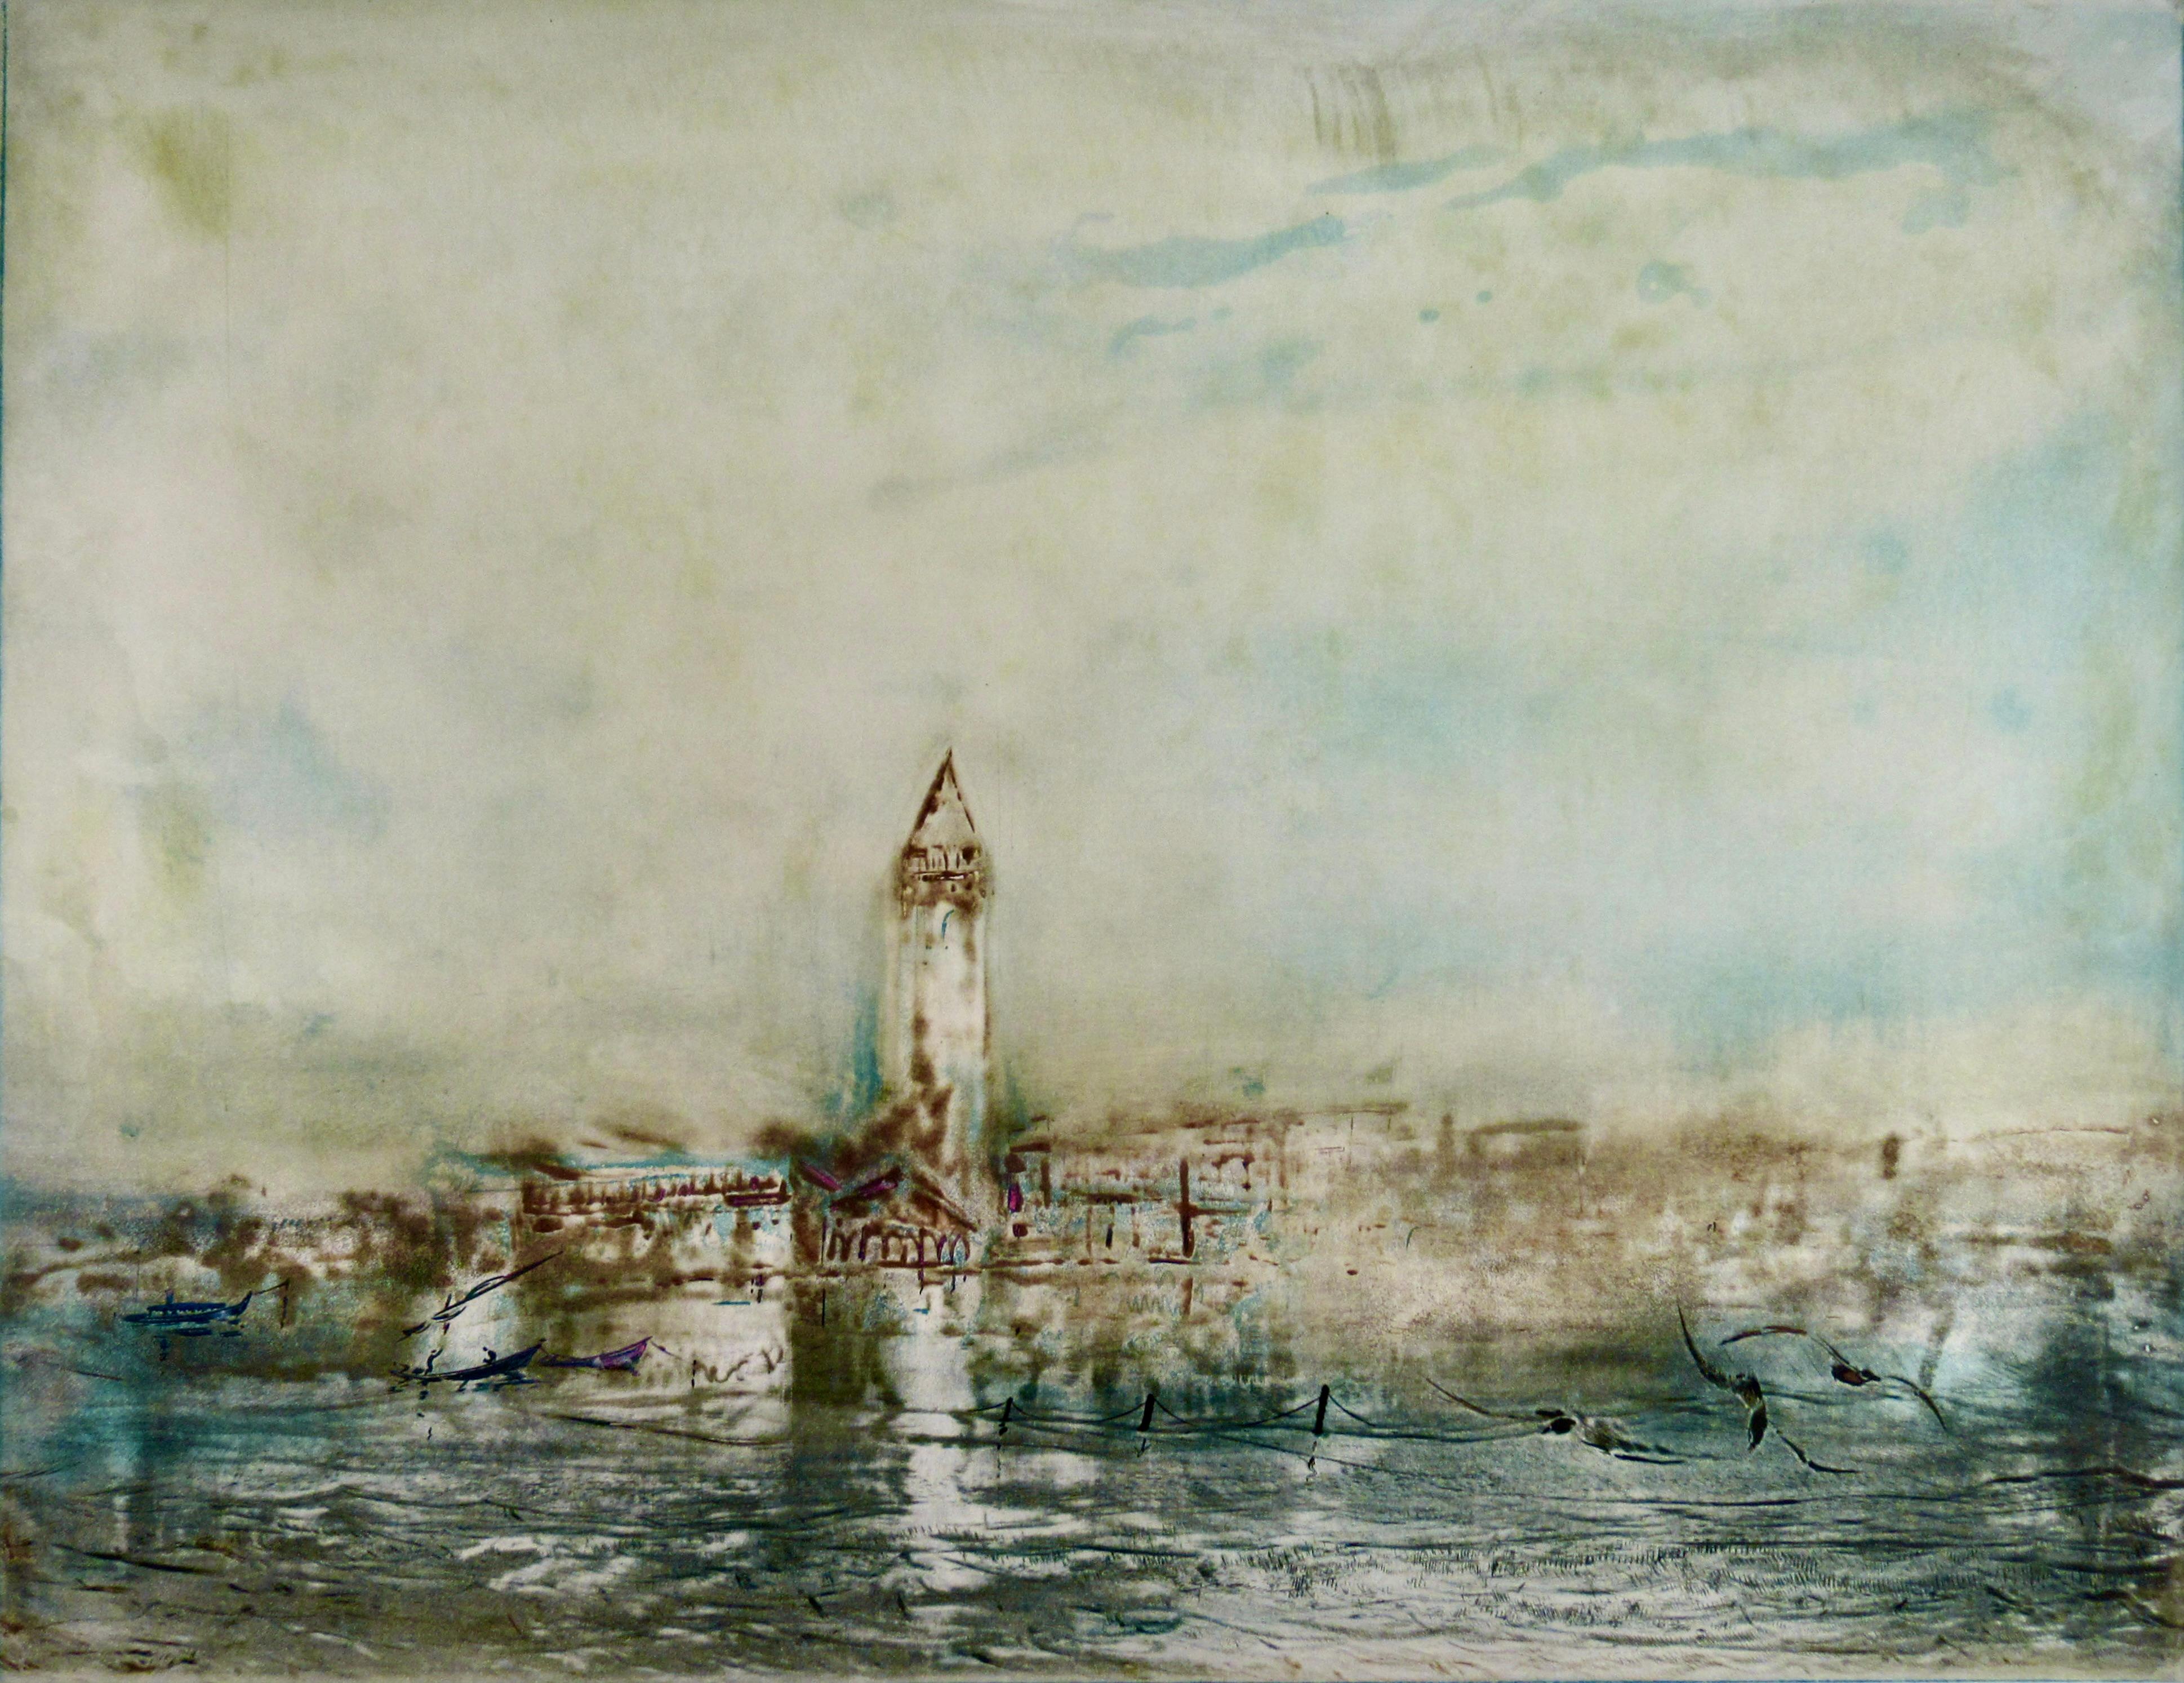 Venice - Print by Kaiko Moti